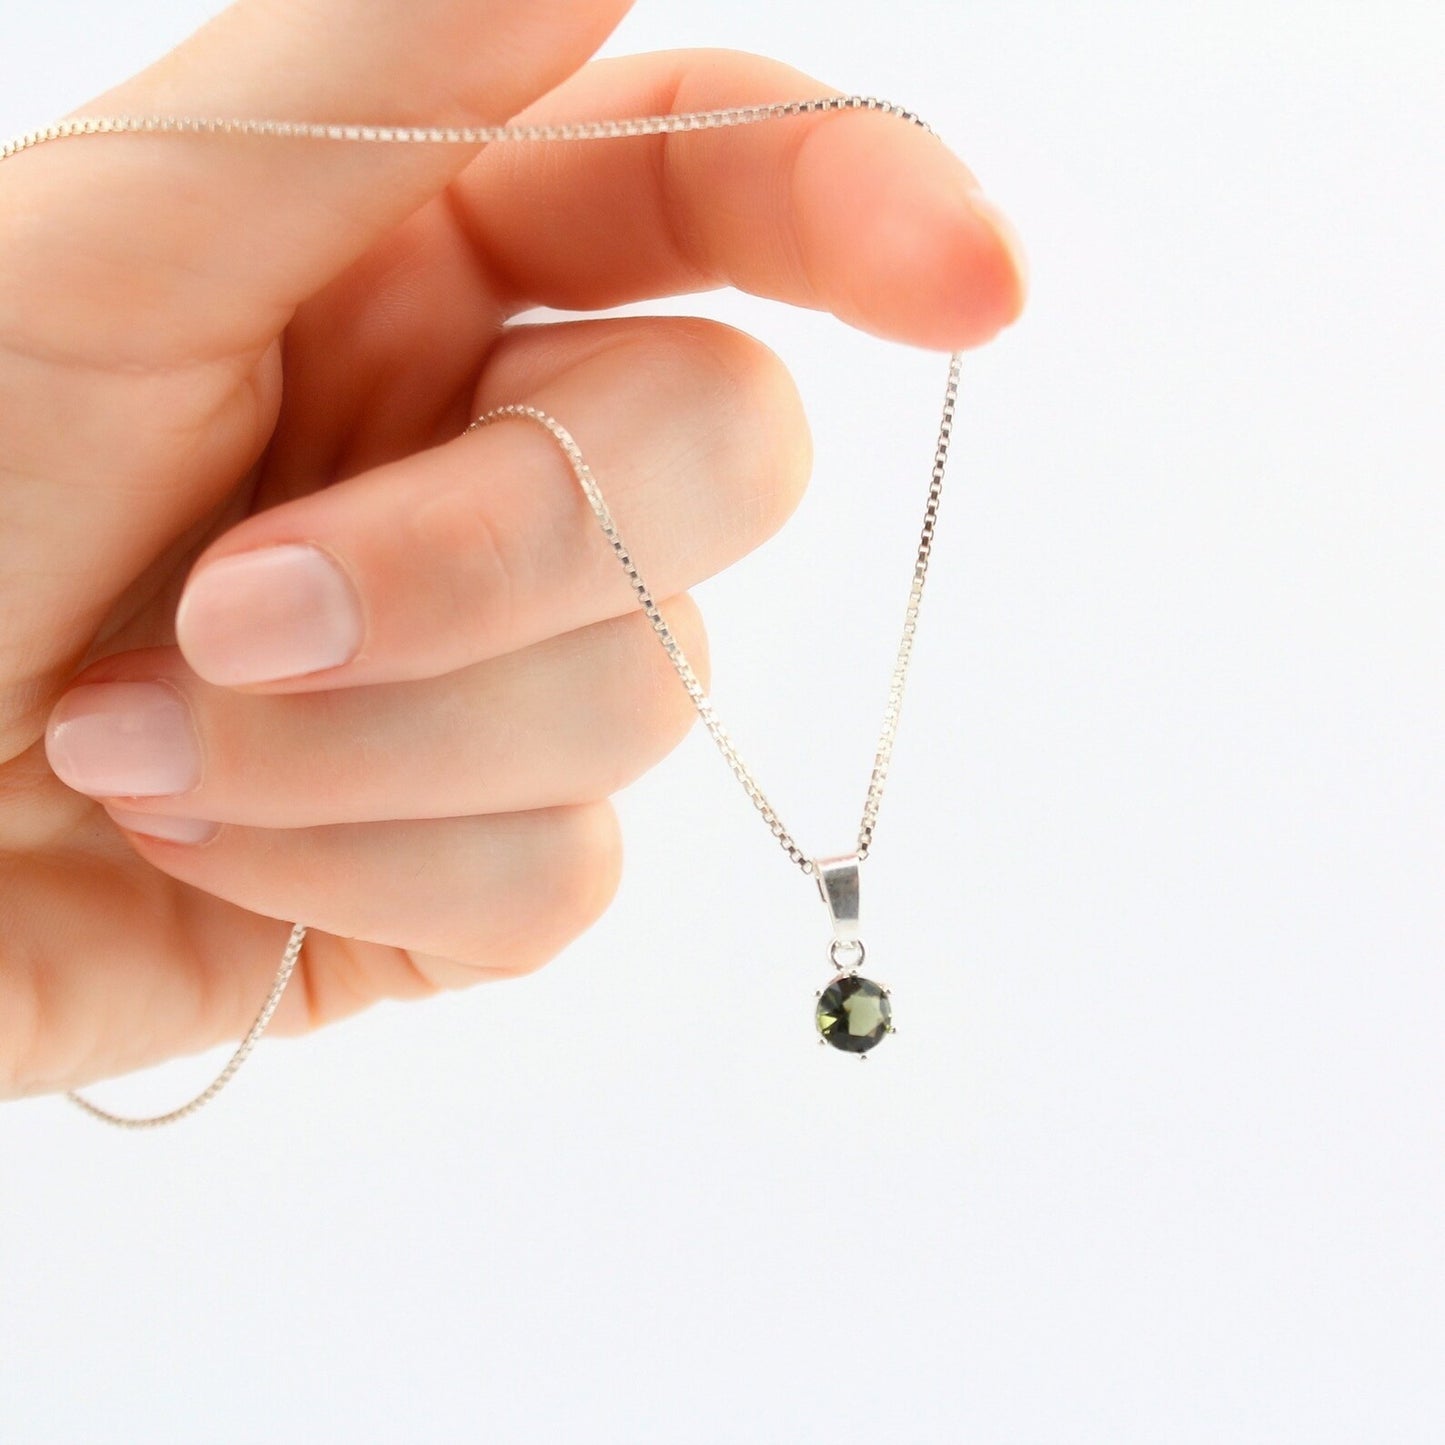 6mm stone real MOLDAVITE Pendant Sterling Silver Moldavite jewelry- CZECH moldavite necklace Genuine moldavite necklaces Authentic moldavite